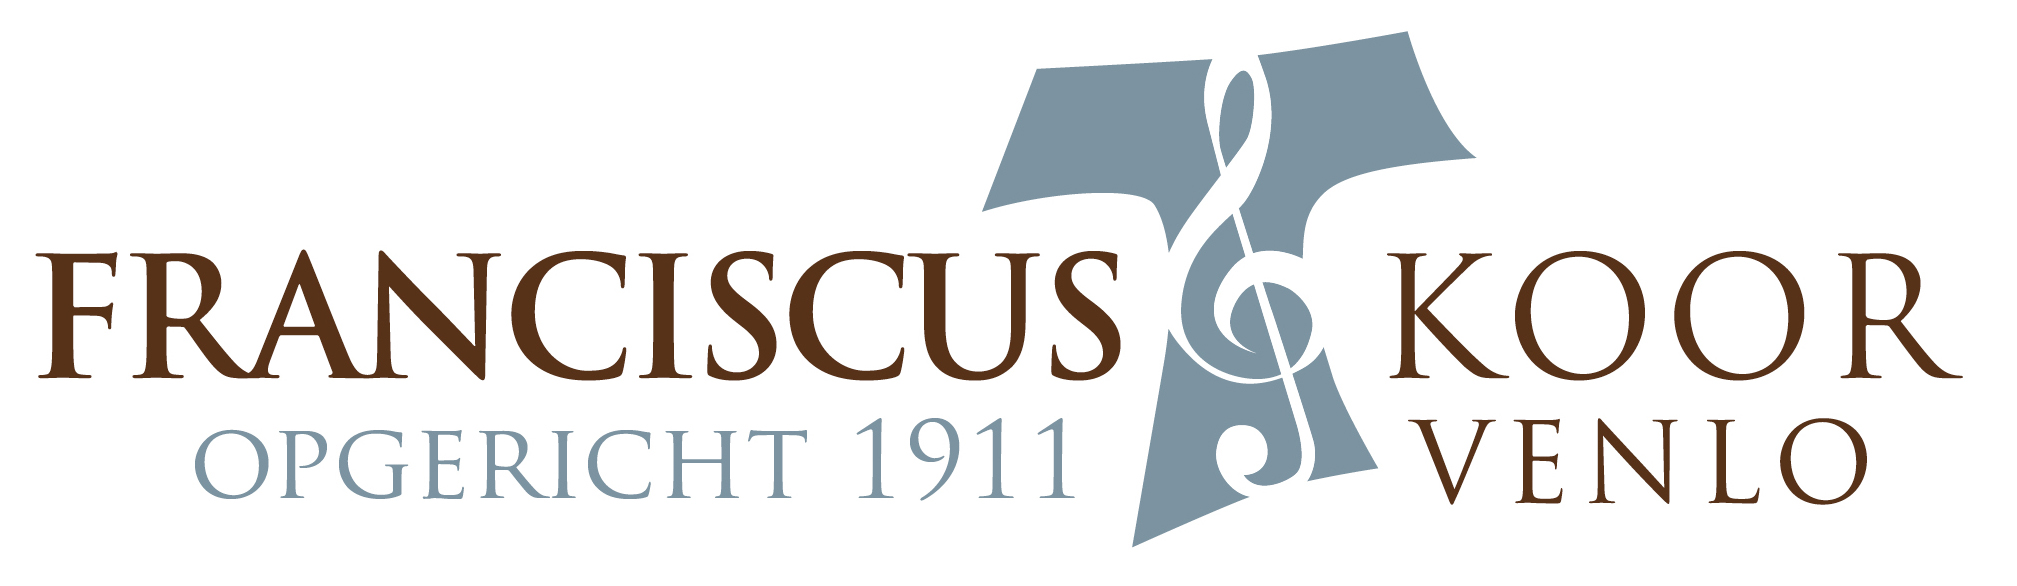 Logo franciscus